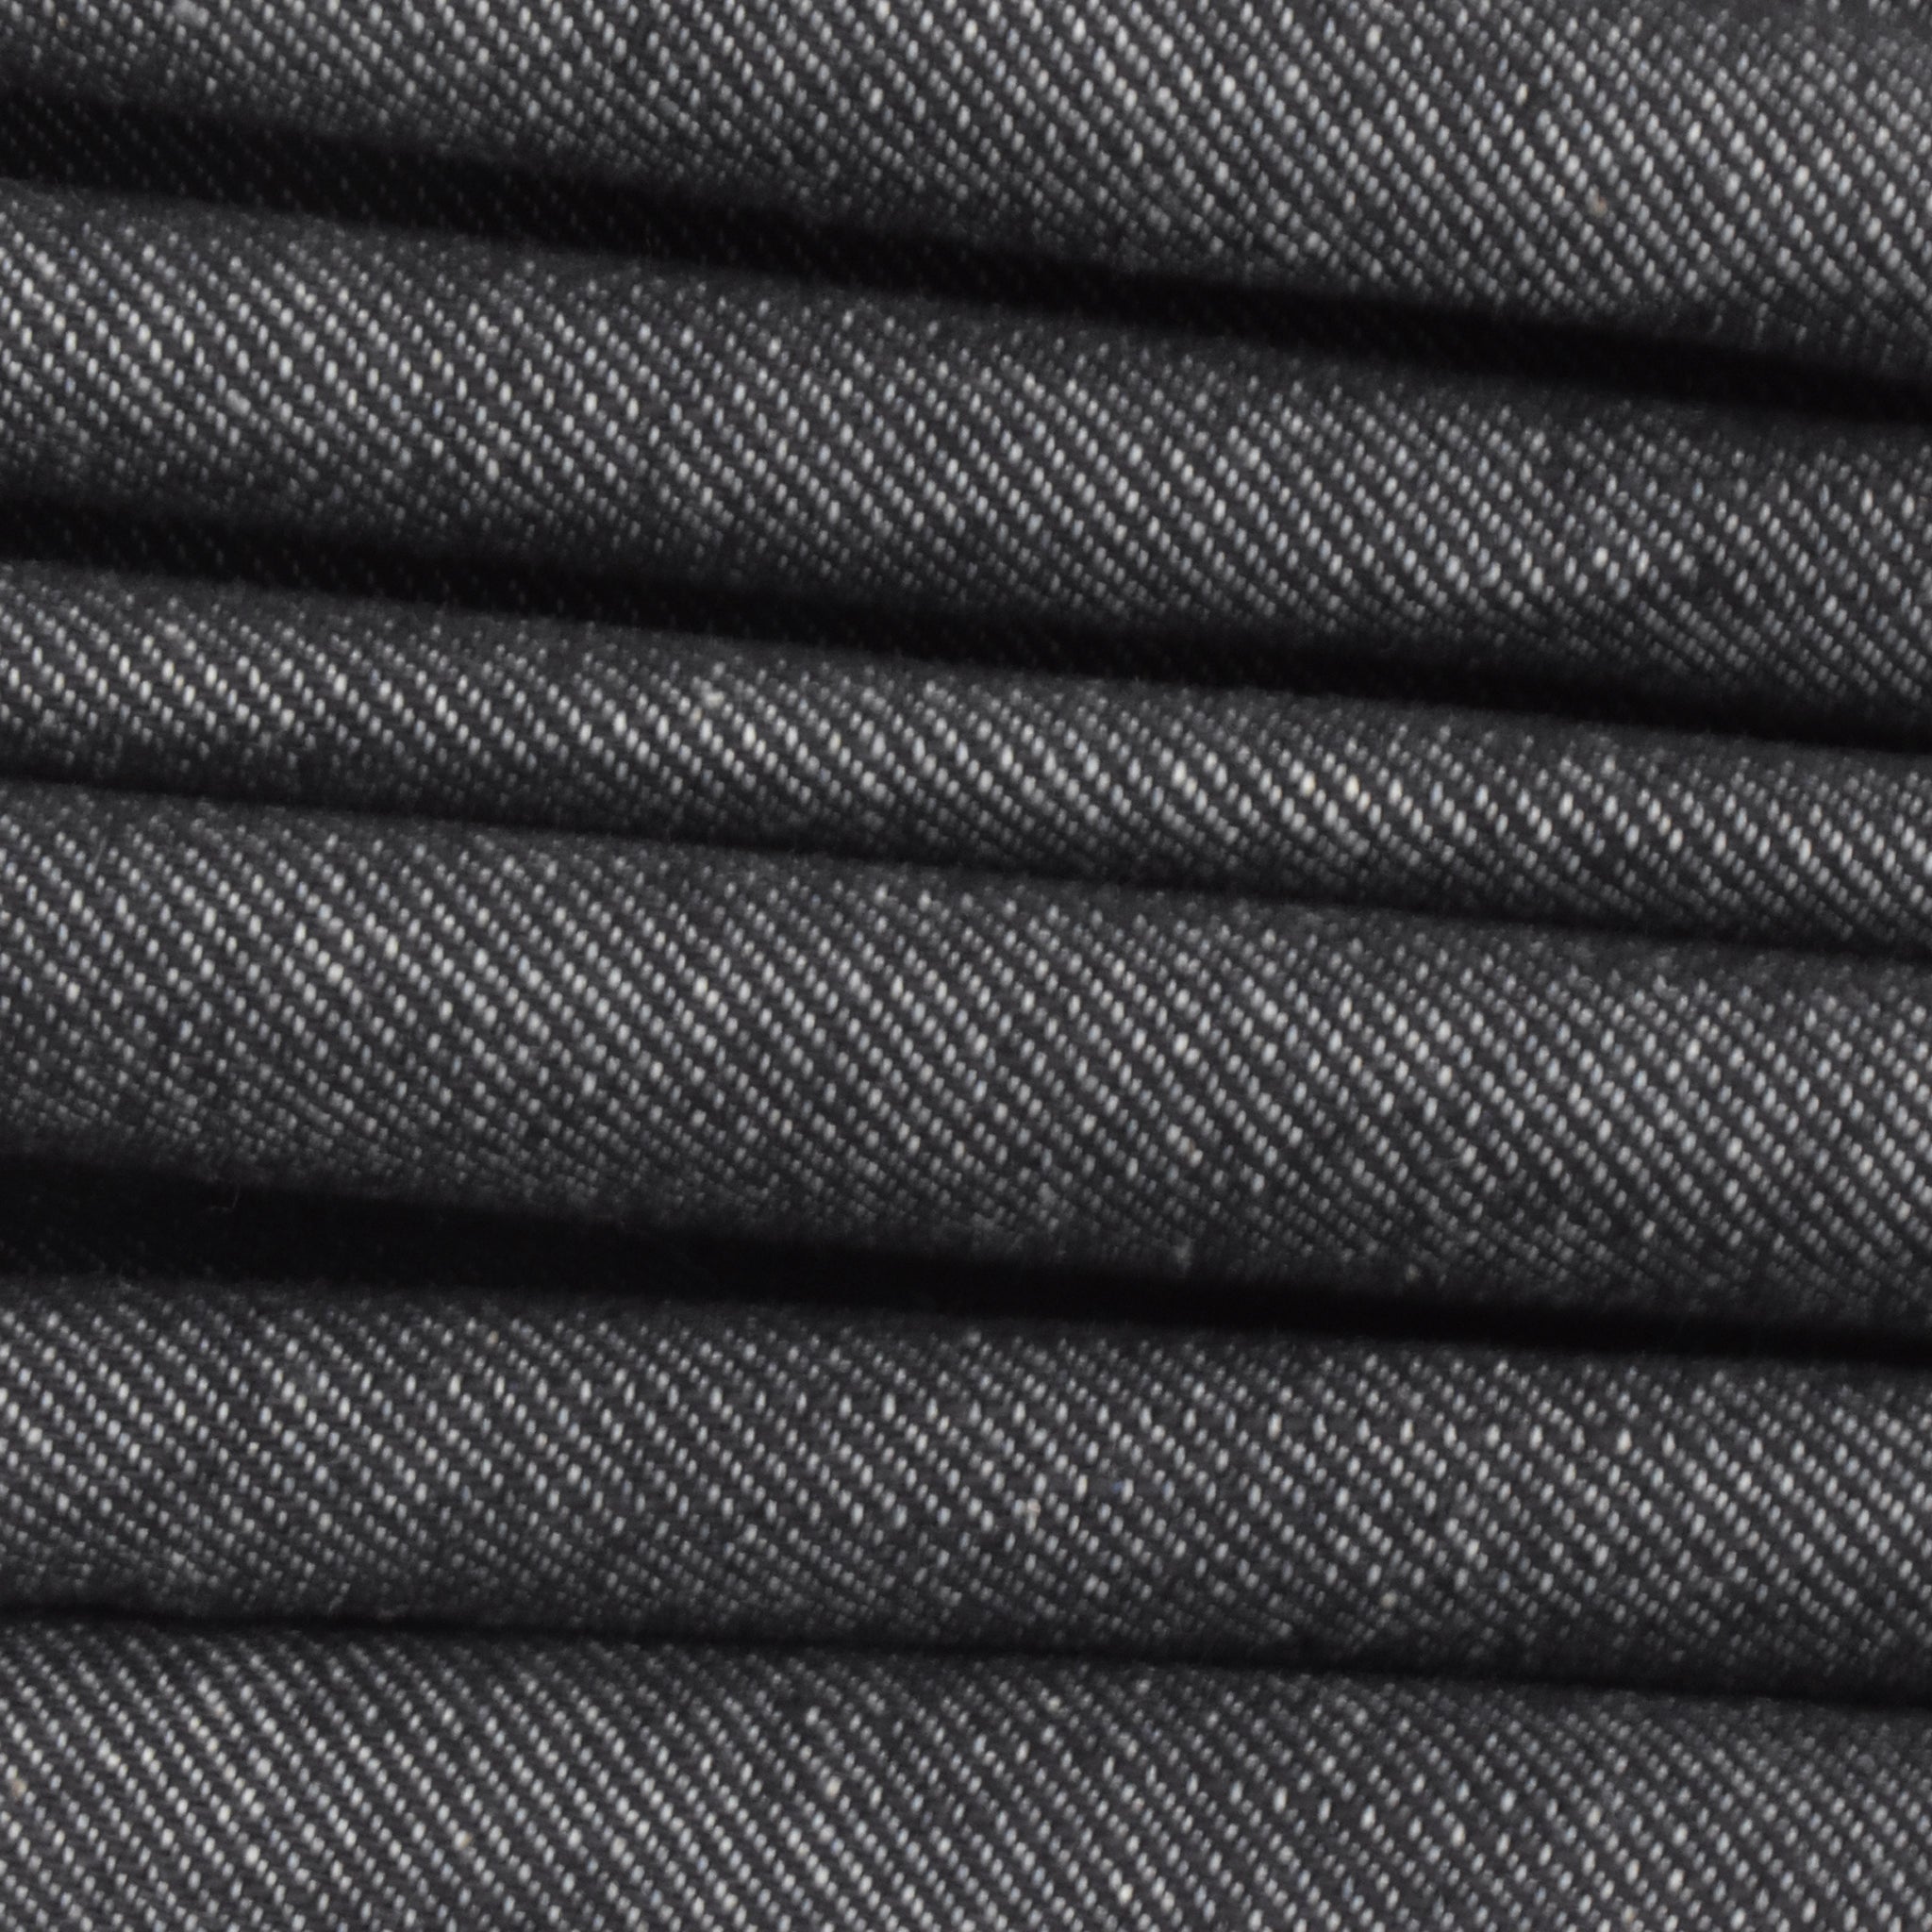 Plain Denim Jeans Fabric at Rs 200/meter in Morbi | ID: 2851703787962